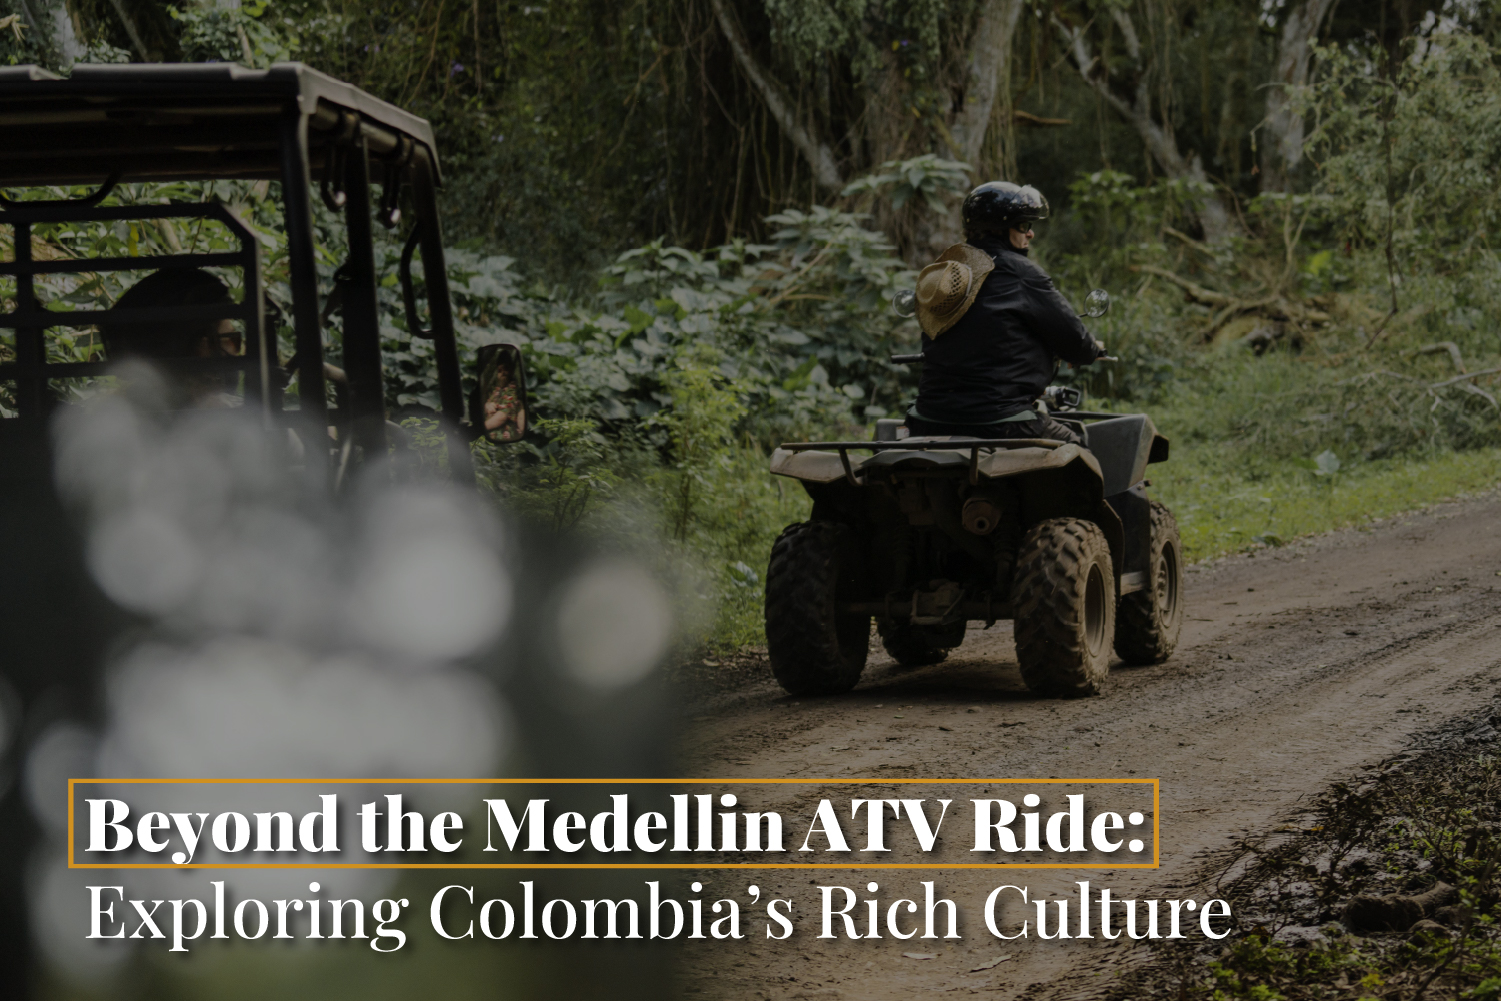 Medellin ATV